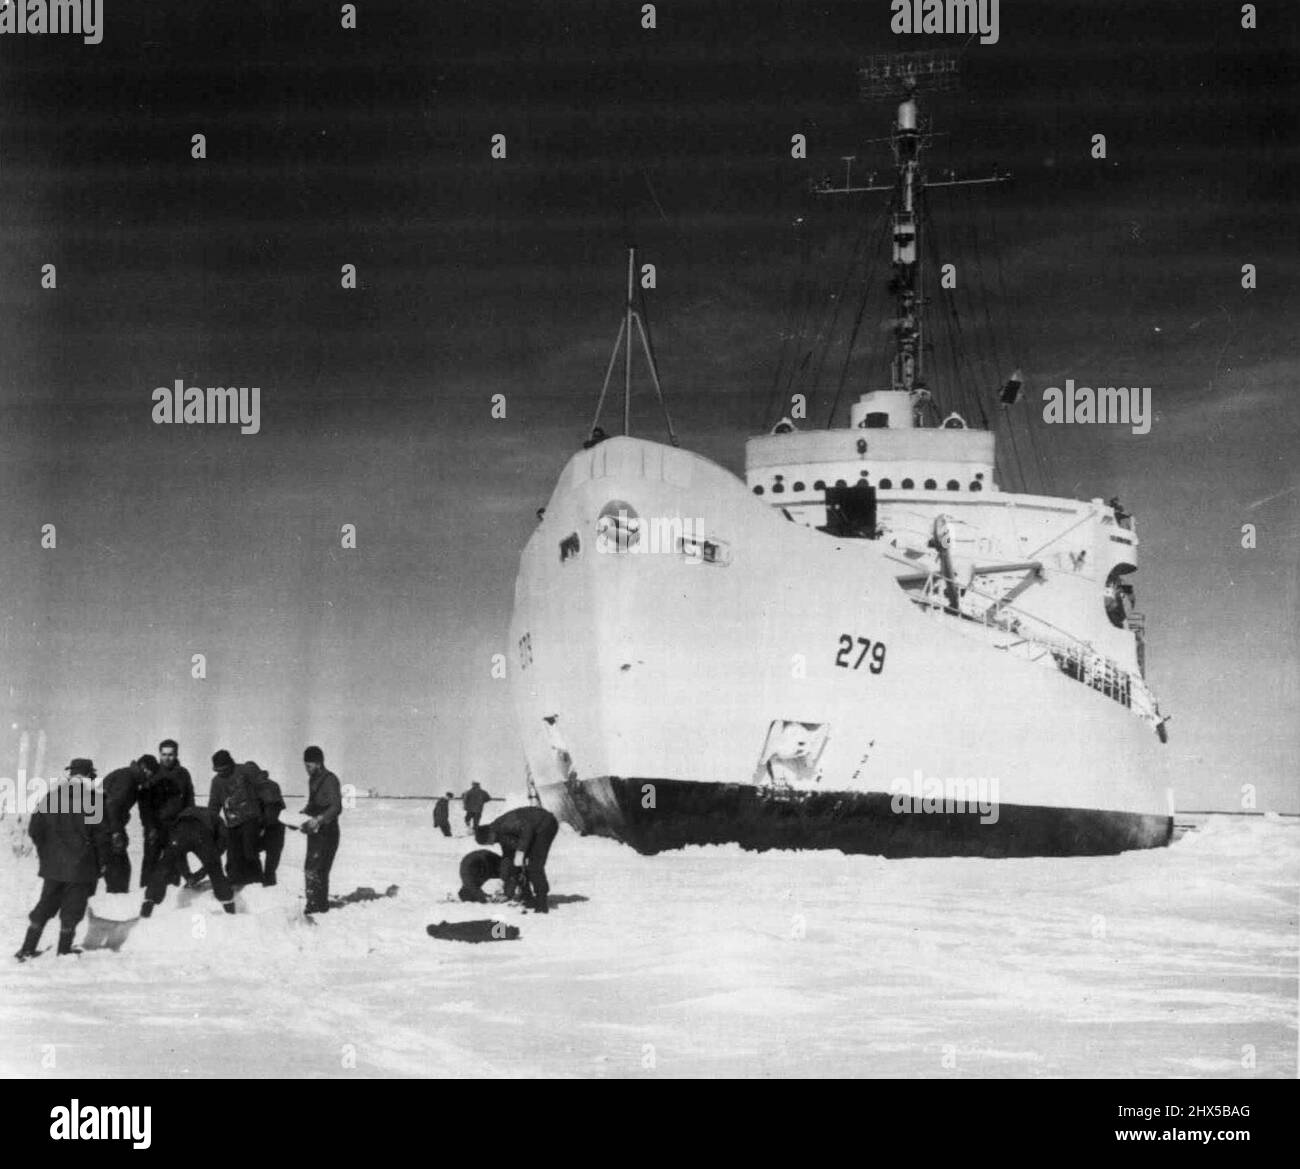 Molo naturale per Icebreaker -- l'icebreaker della Guardia Costiera Eastwind si trova in un molo naturale di ghiaccio in Baffin Bay, mentre i membri dell'equipaggio tentano di soddisfare un desiderio di costruire un igloo Eskimo da blocchi di ghiaccio. L'Eastwind ha aspettato nel ghiaccio, mentre le squadre di cani hanno portato i membri di una missione idrografica nell'isola di Baffin, collegata al ghiaccio, nei territori del nord-ovest del Canada, la scorsa estate. L'Eastwind è stato bloccato da ghiaccio troppo pesante per poter attraversare 25 miglia dalla costa di Baffin Island. Dicembre 29, 1952. (Foto della Guardia Costiera degli Stati Uniti foto). Foto Stock